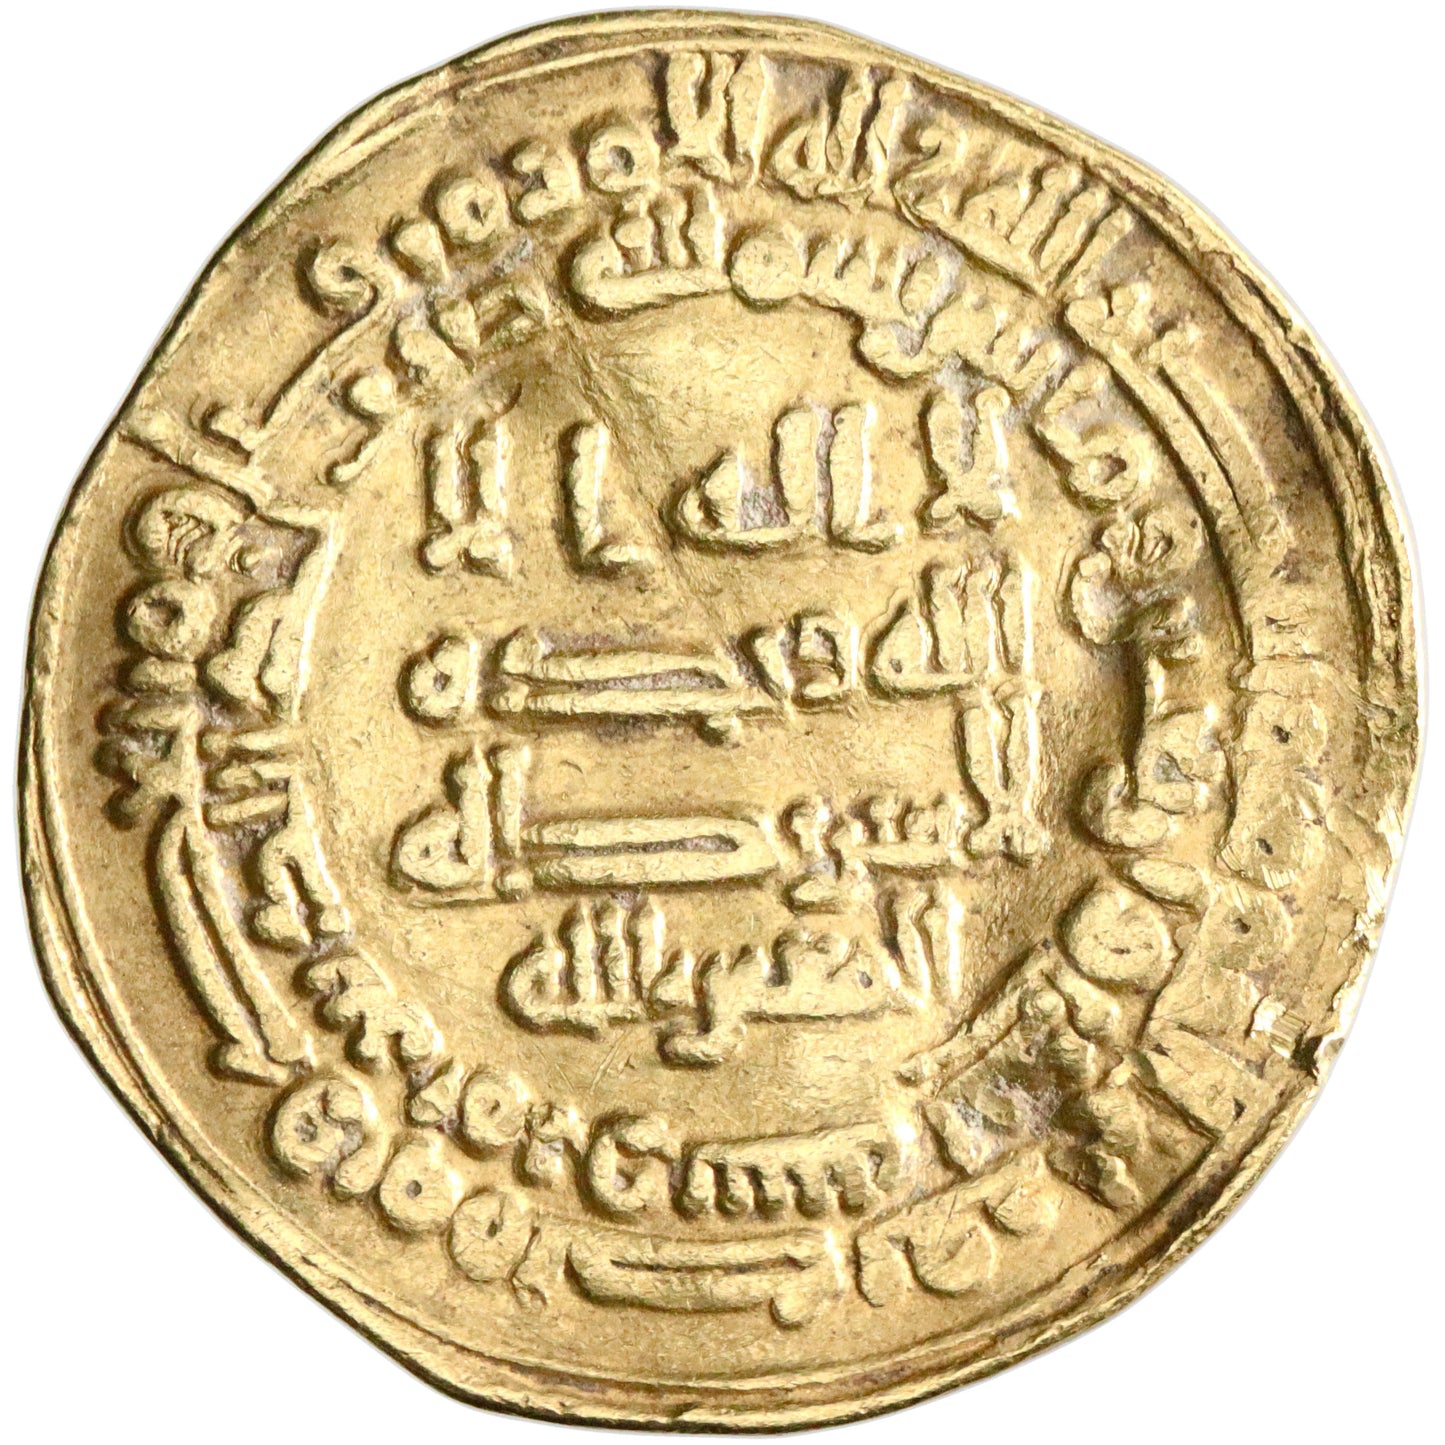 Abbasid, al-Mutawakkil, gold dinar, Marw mint, AH 241, citing al-Mu'tazz